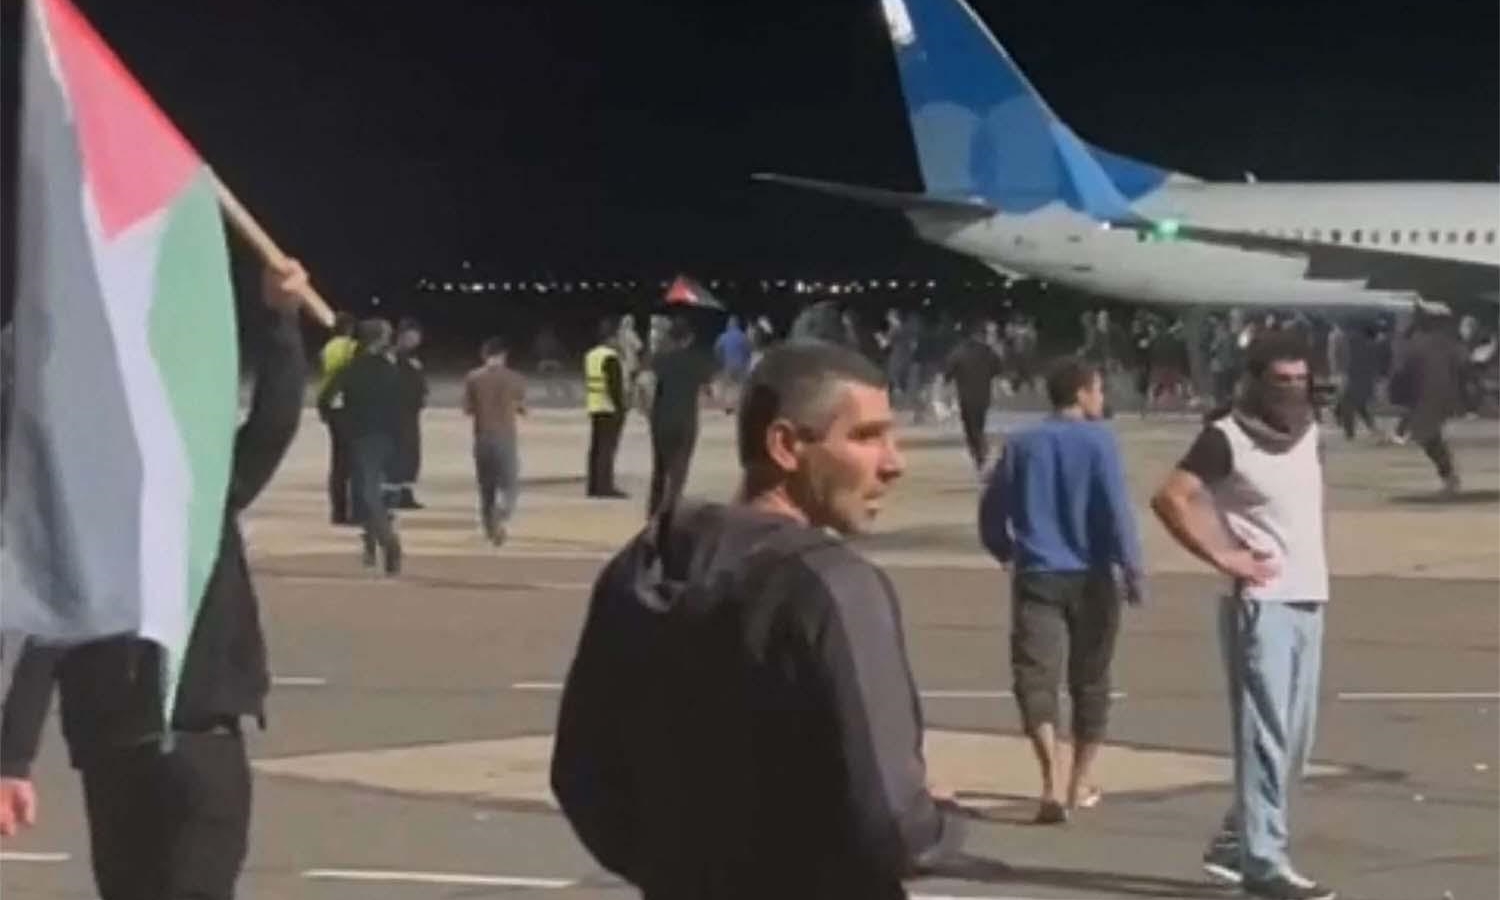 Đám đông truy lùng người Israel ở sân bay lĩnh án tù tối đa 10 ngày